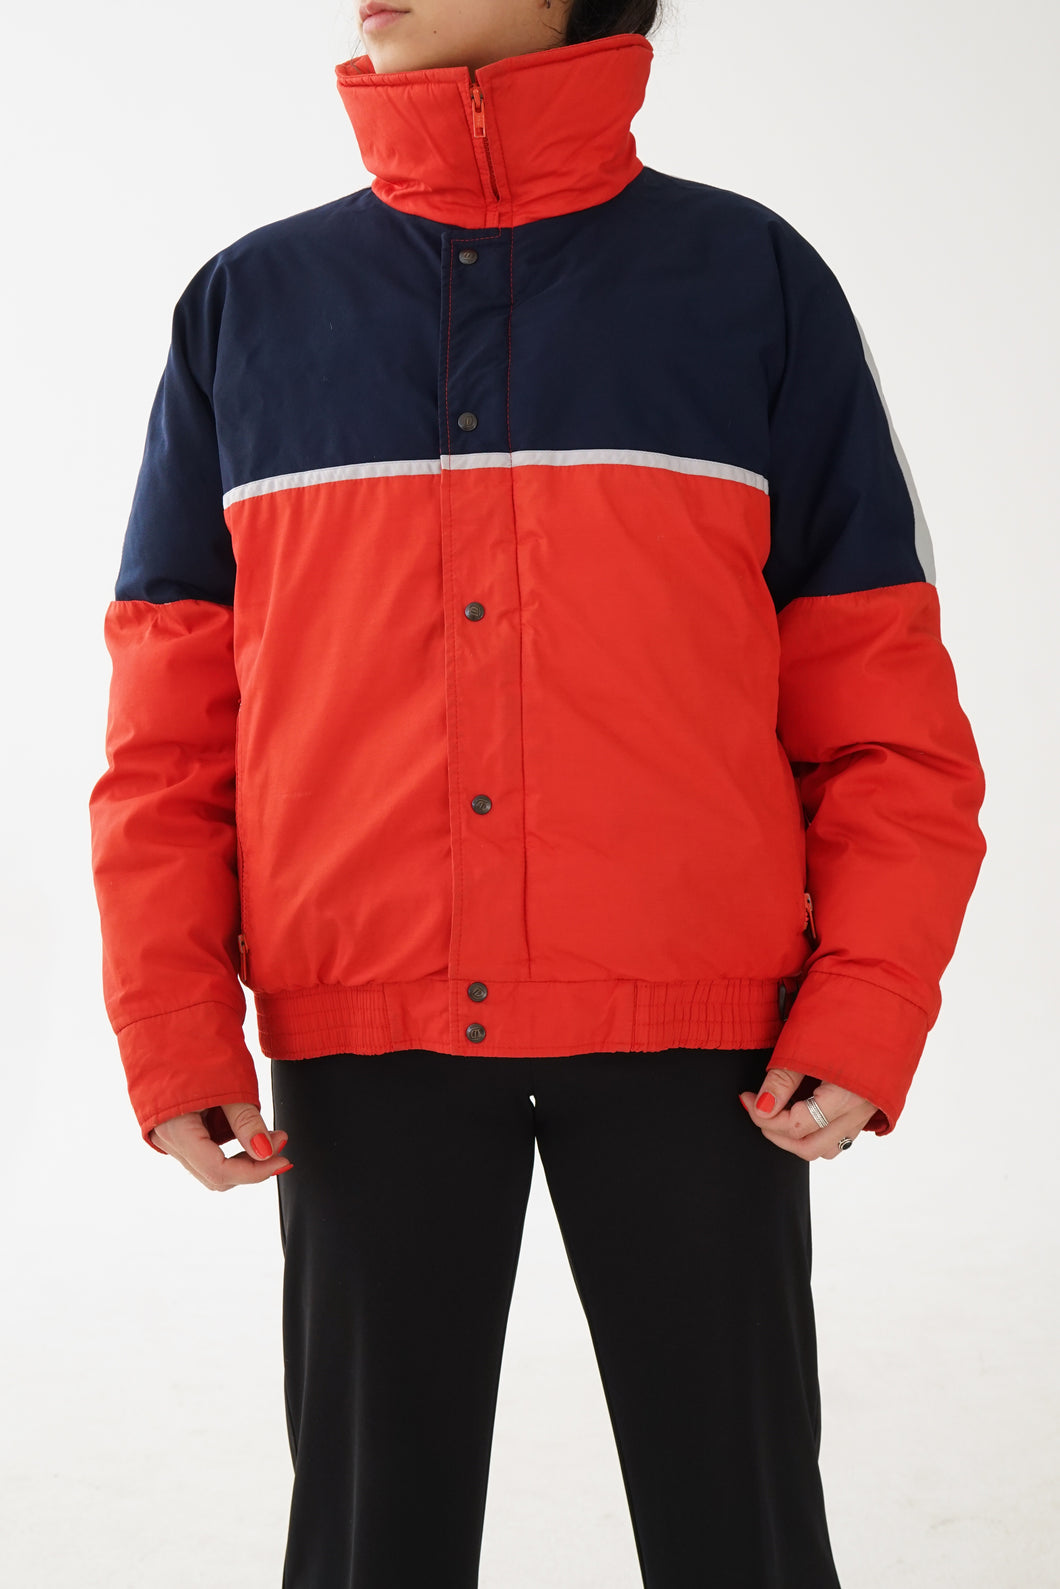 Manteau rétro en duvet Ditrani rouge et bleu foncé pour homme taille 42 (M)